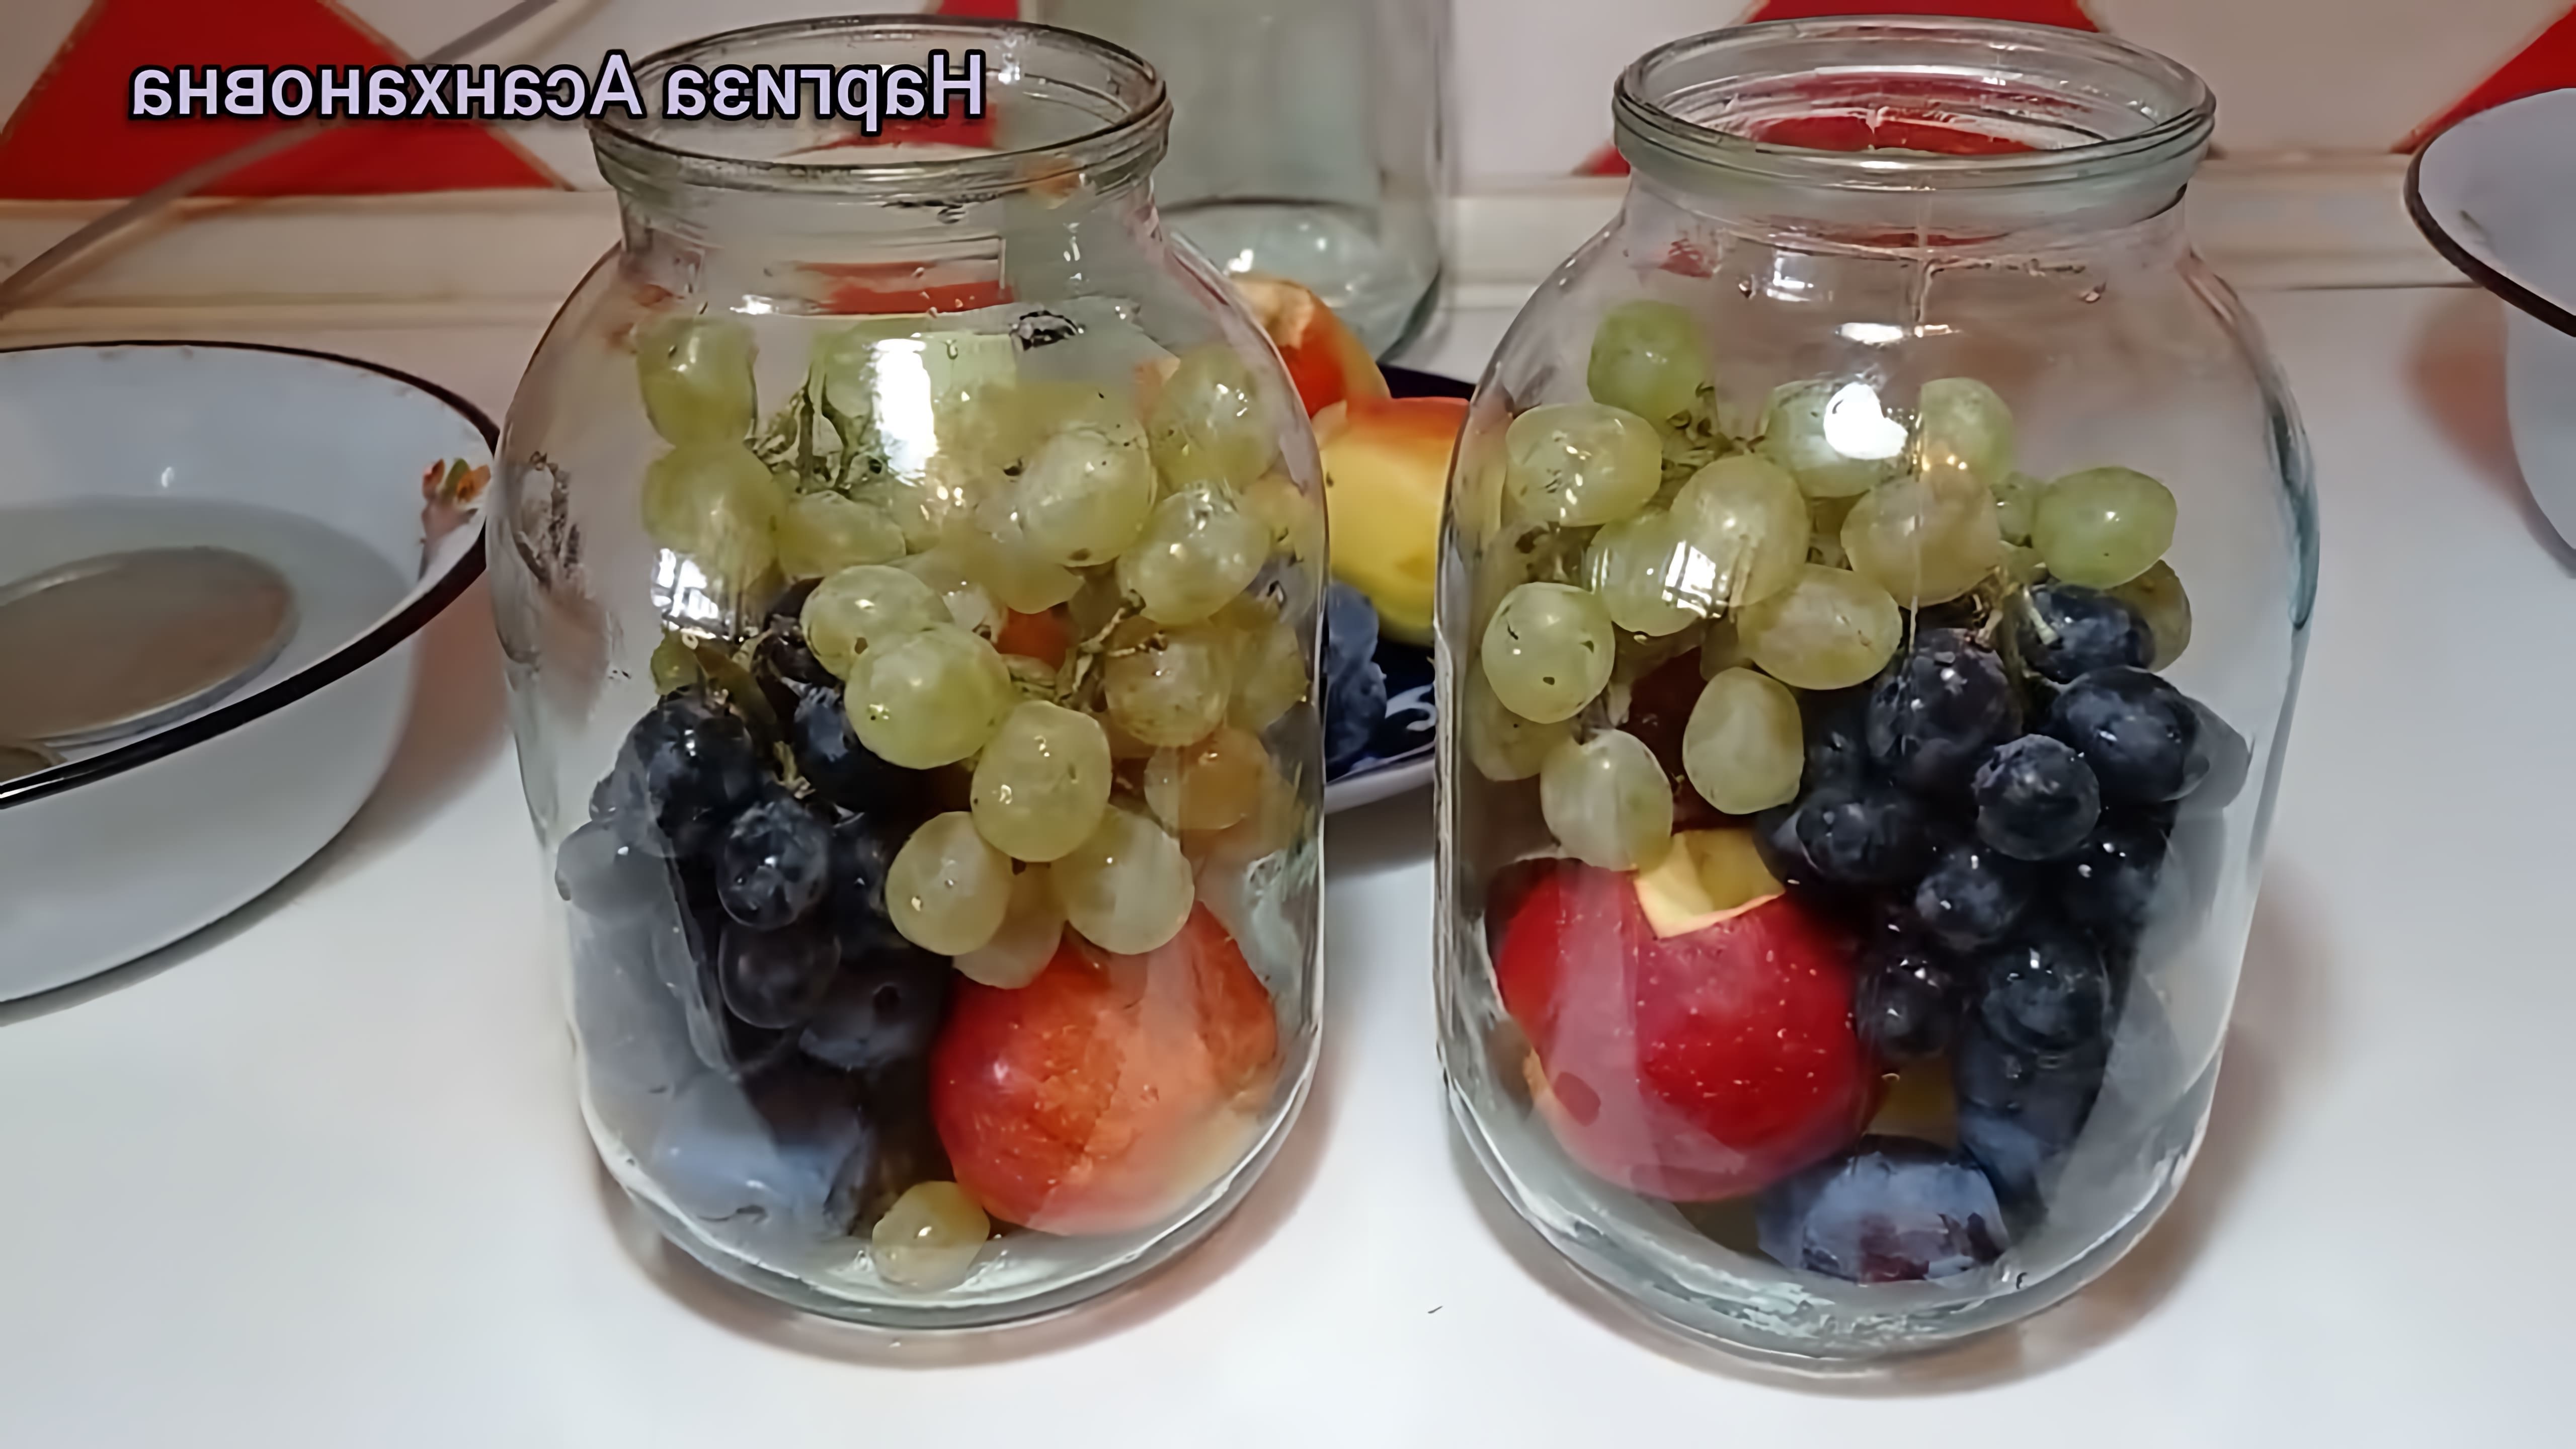 Вкуснейший компот ассорти из фруктов - это видео-ролик, который демонстрирует процесс приготовления компота из различных фруктов